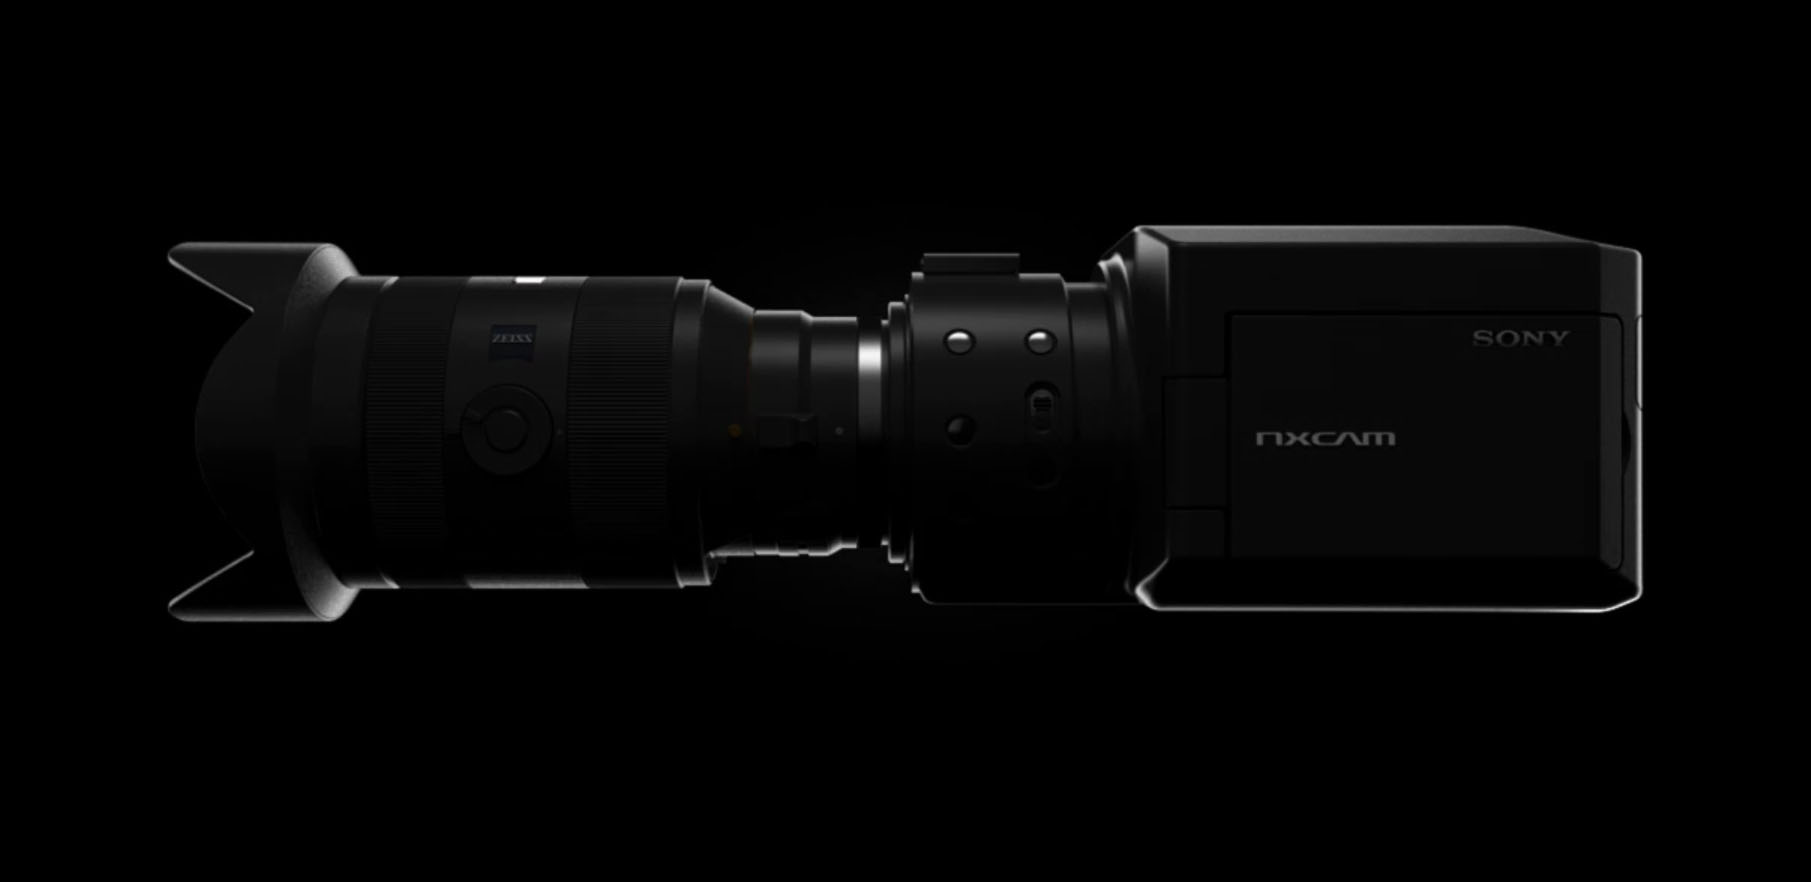 Rumor: Sony to announce NEX FS700 at NAB shooting 4K, 960 fps for $8K?